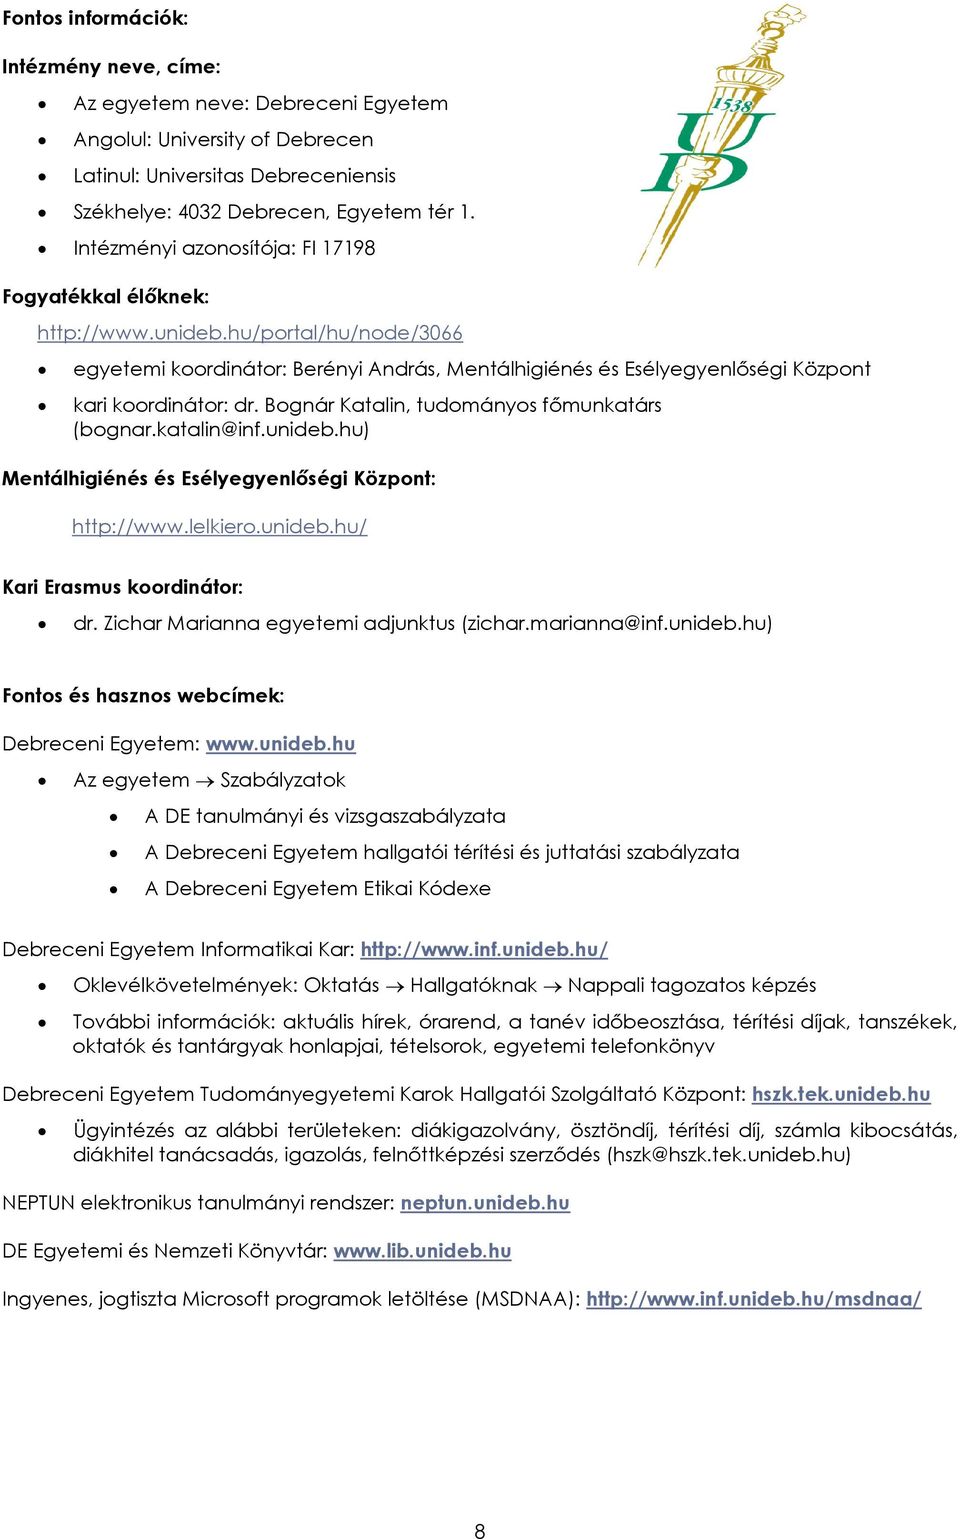 Debreceni Egyetem Informatikai Kar - PDF Ingyenes letöltés